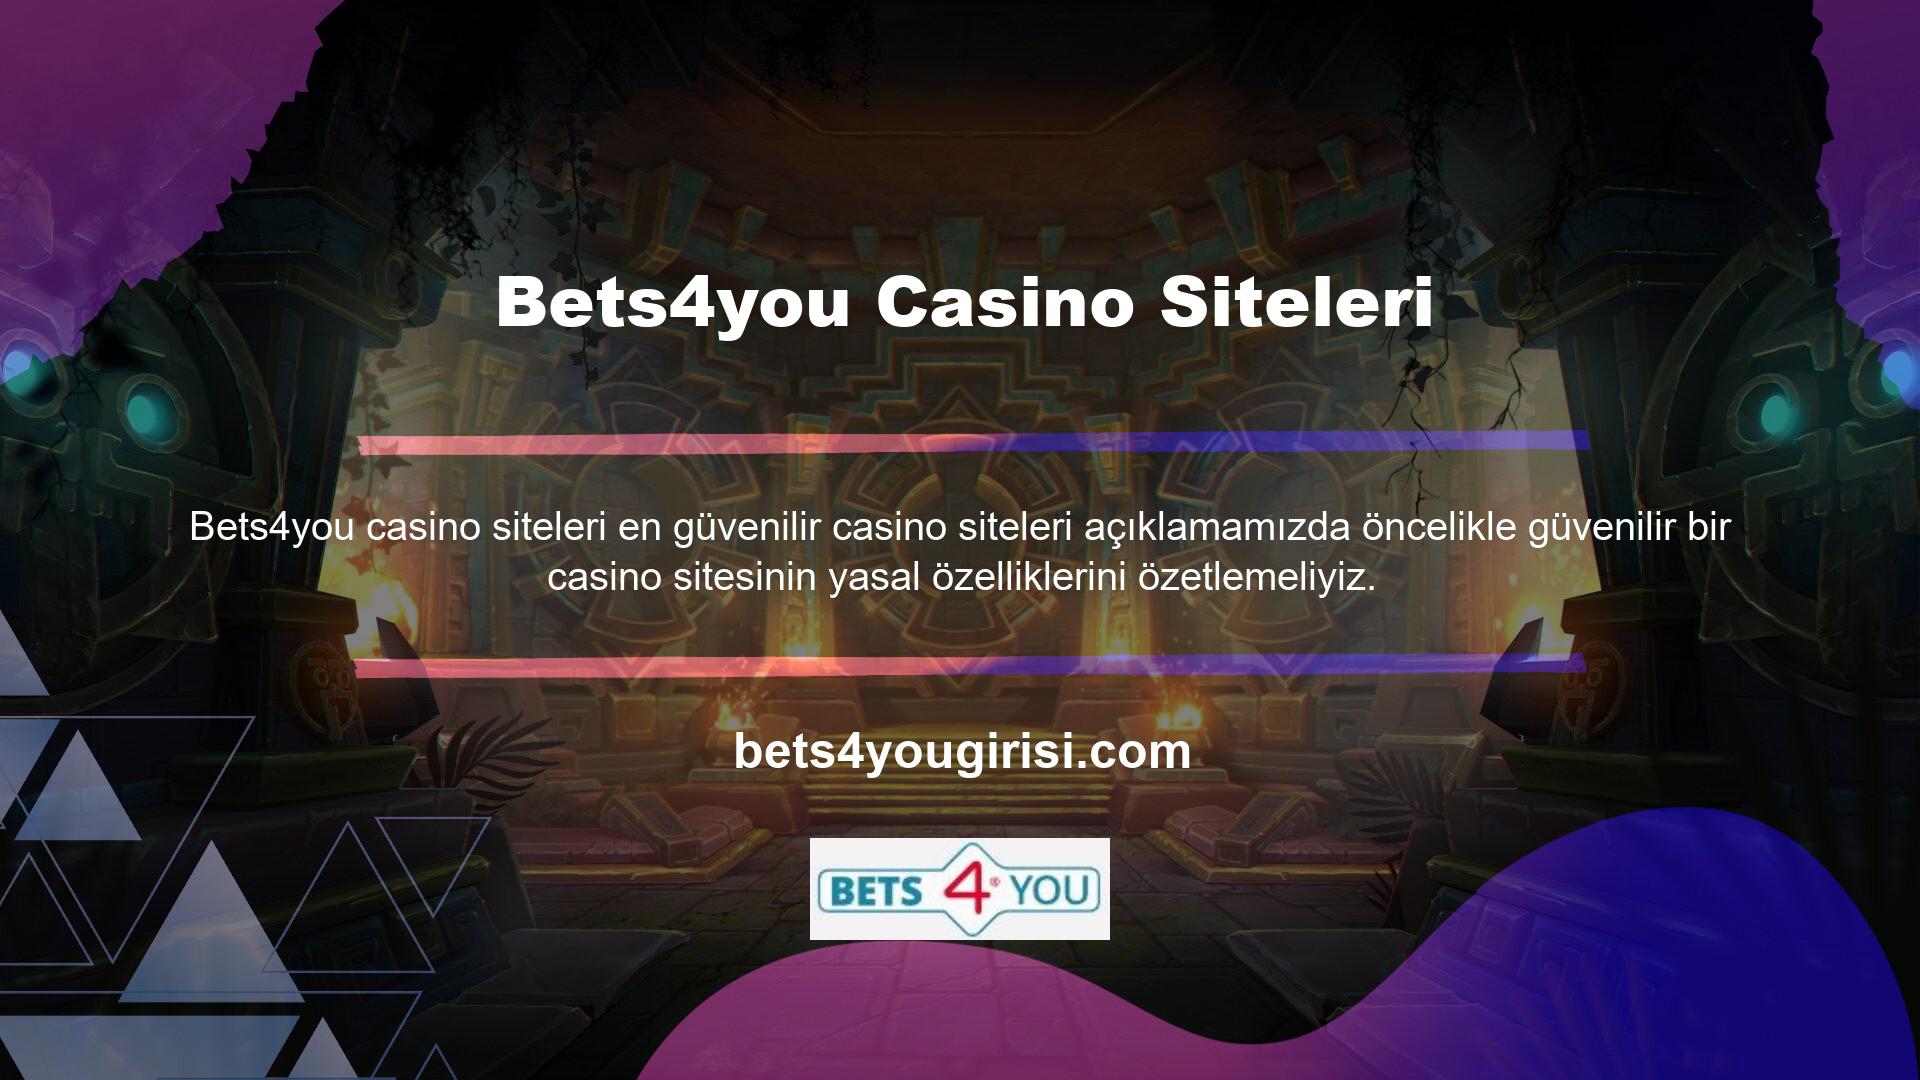 Bets4you Casino web sitesinde bir hesap açmak, para yatırmak veya oyun oynamak istiyorsanız, lütfen önce şirket bilgilerini kontrol edin